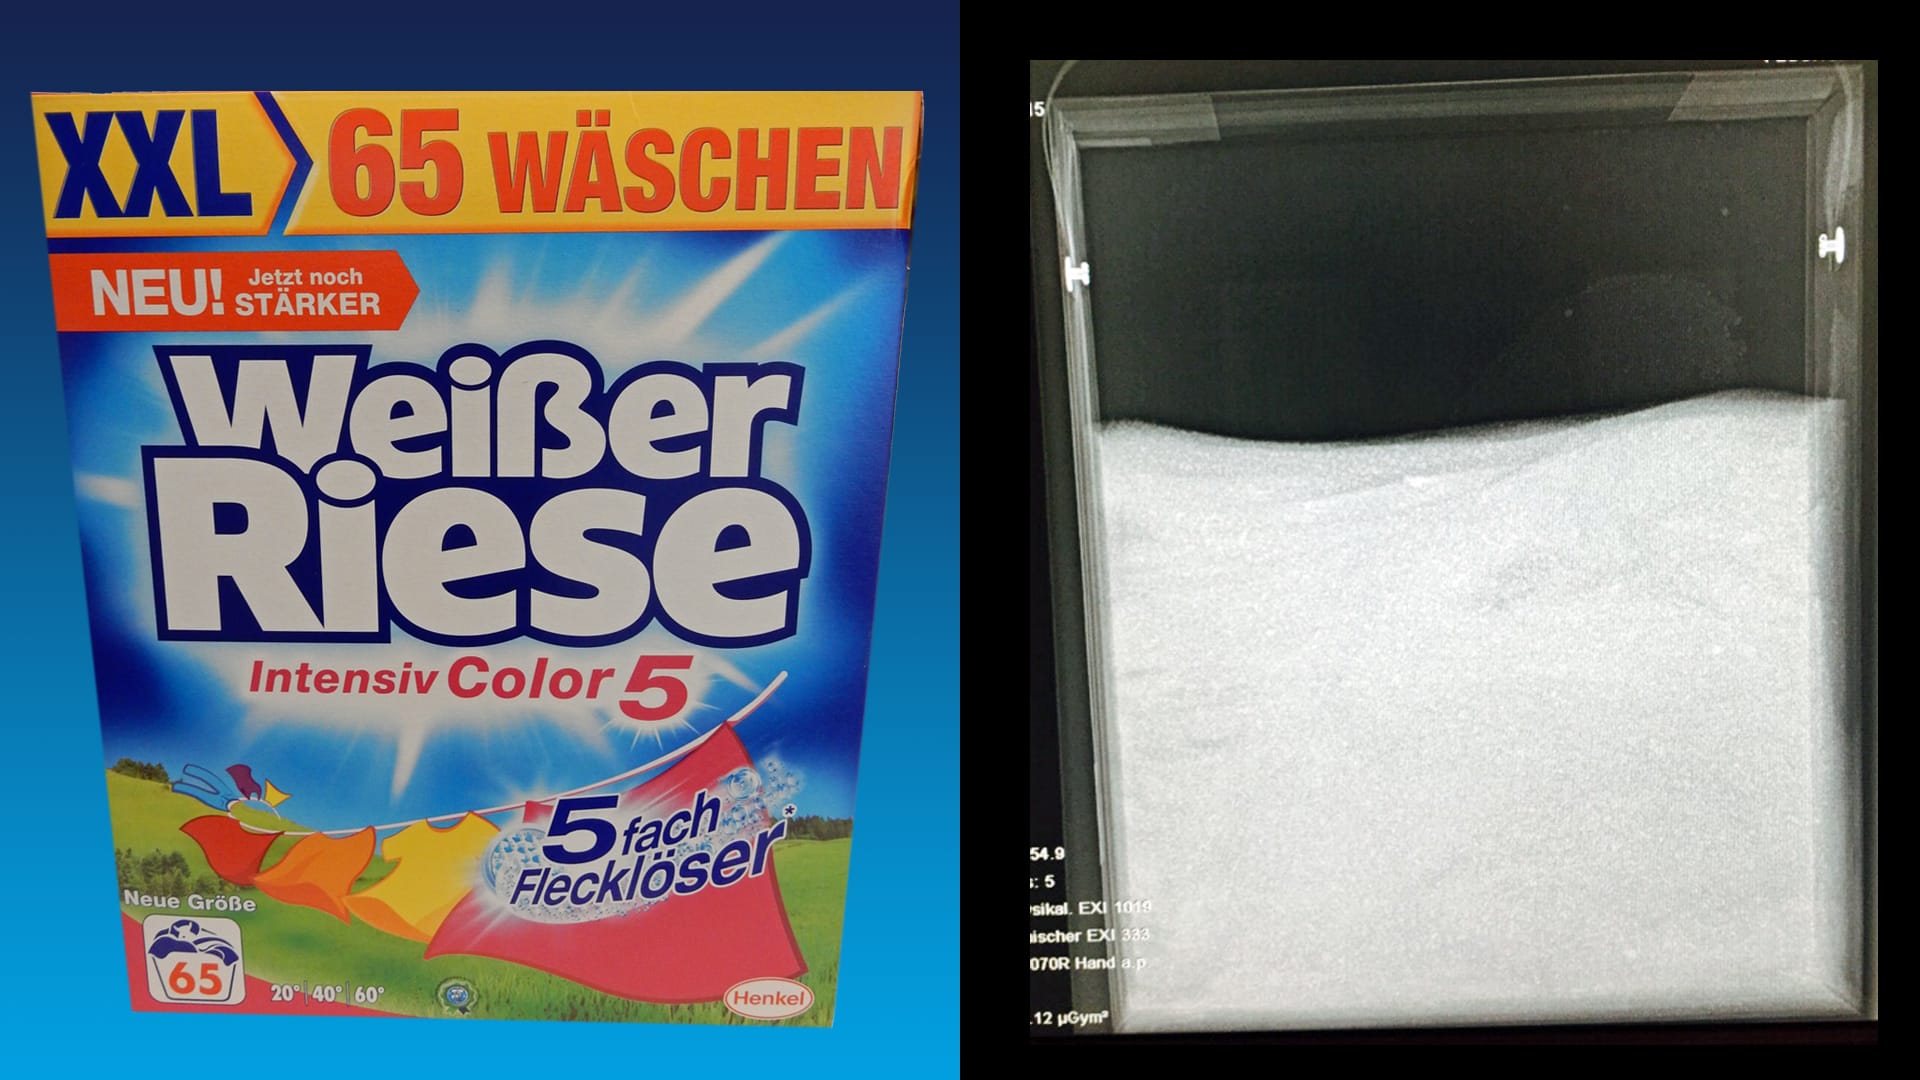 Das Waschmittel "Weißer Riese" (11,99 Euro für 65 Wäschen) schummelte vergleichsweise wenig: Die Verpackung besteht zu 21 Prozent aus Luft.